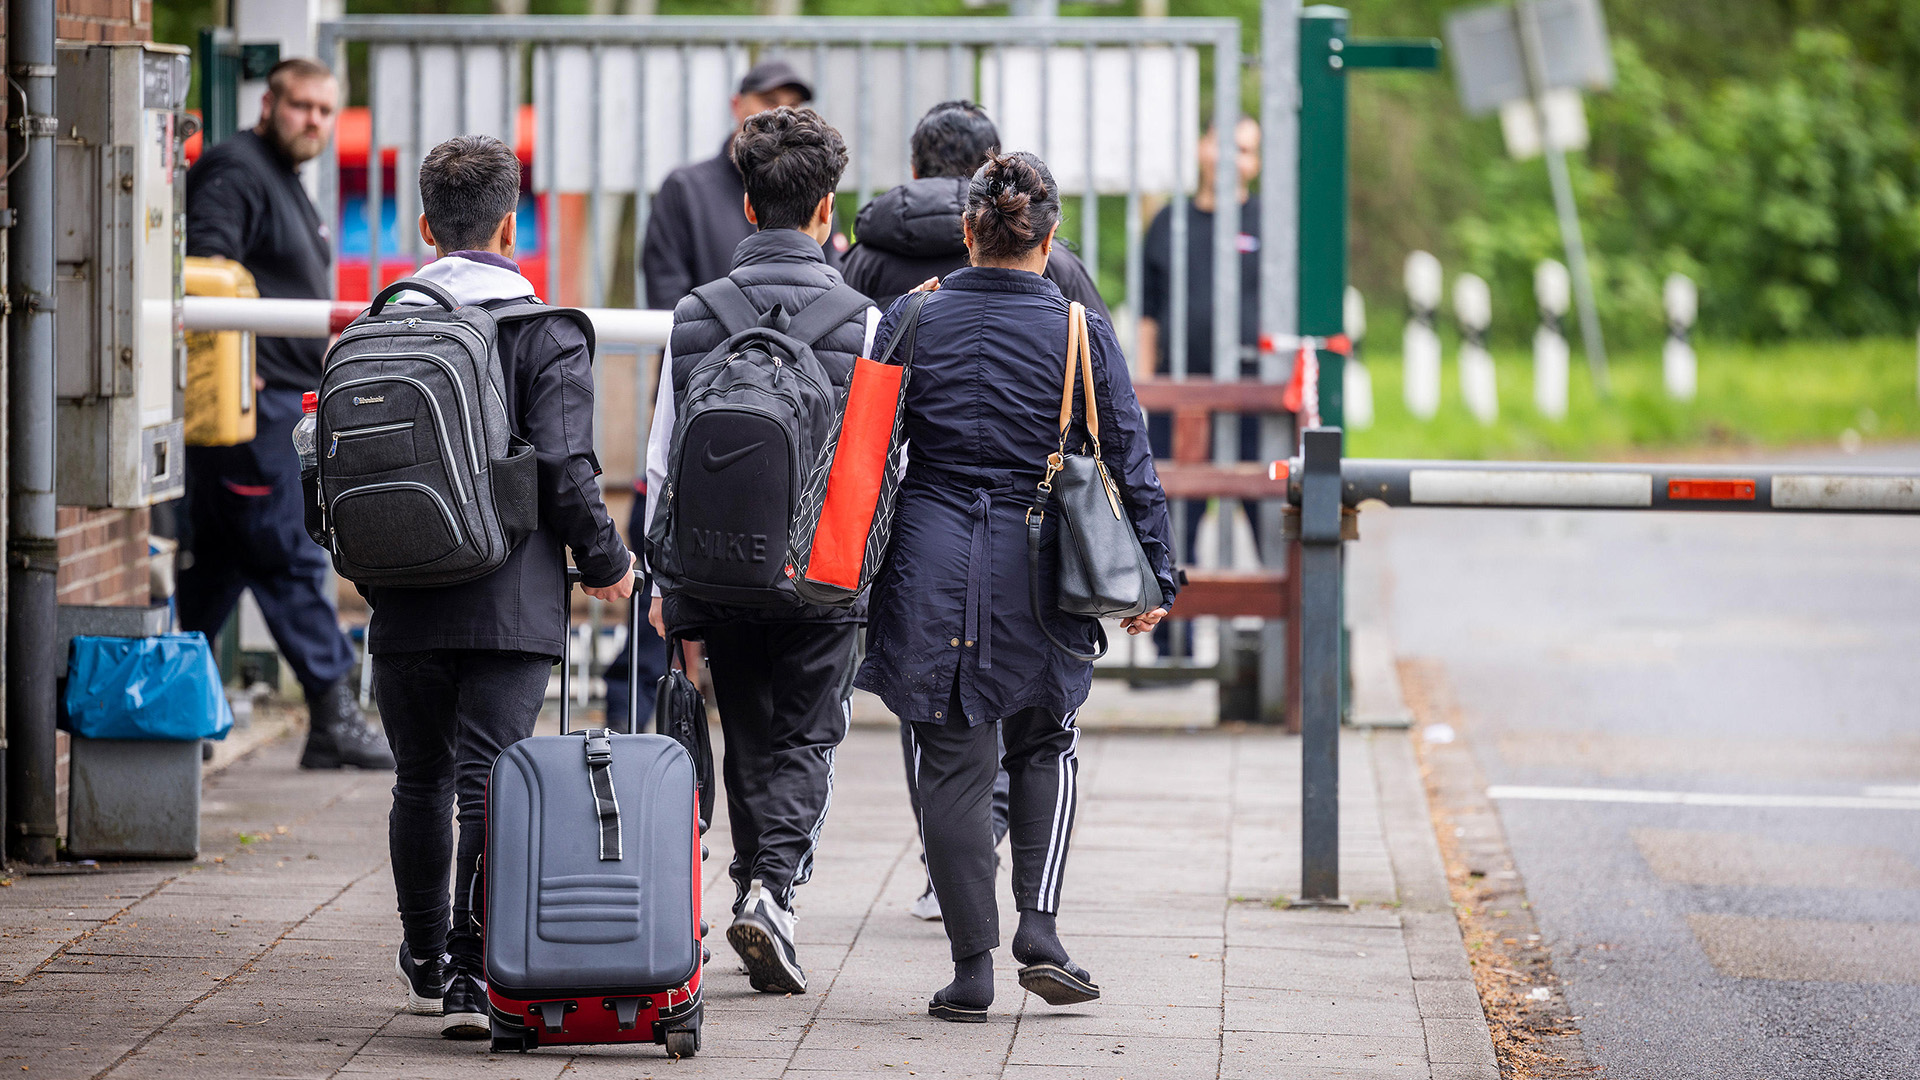 Flüchtlinge mit Gepäck am Eingang zur LAB Bramsche, dem Ankunftszentrum der Landesausnahmebehörde Bramsche-Hesepe in Niedersachsen.